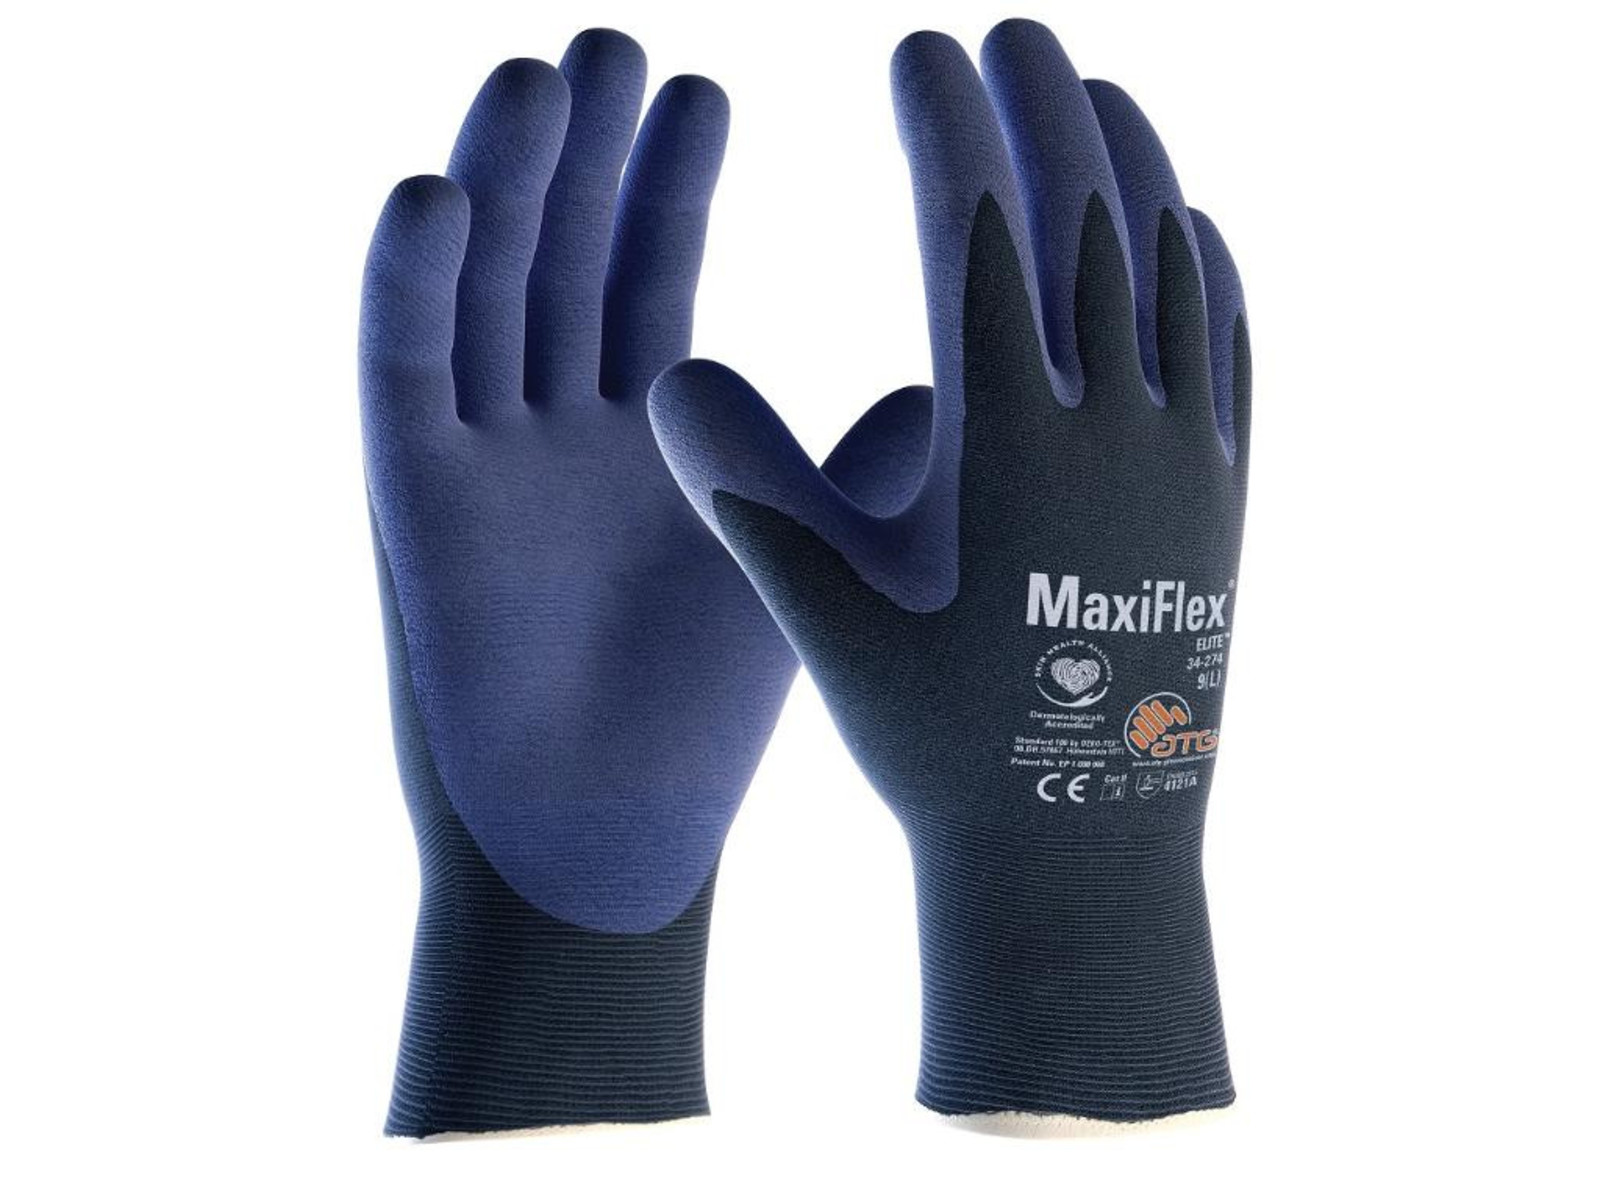 Pracovné rukavice ATG MaxiFlex Elite 34-274 - veľkosť: 6/XS, farba: navy